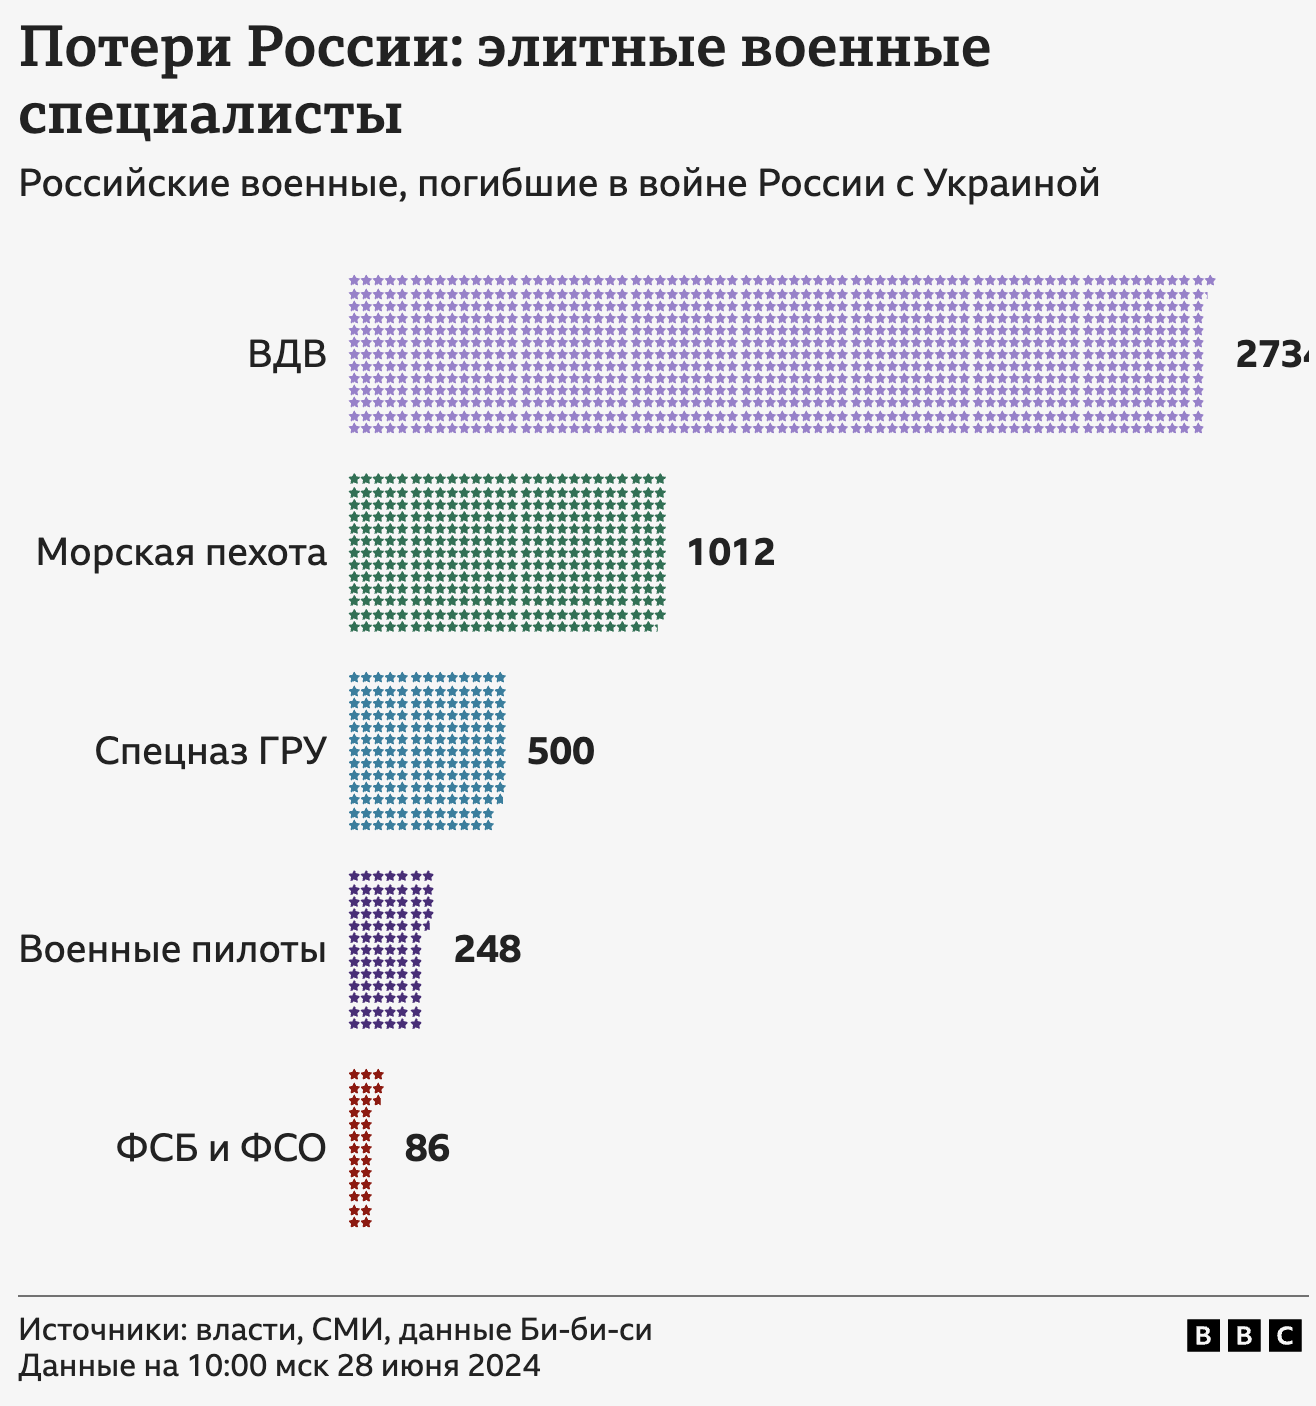 Данные о потерях России в Украине за 855 дней войны